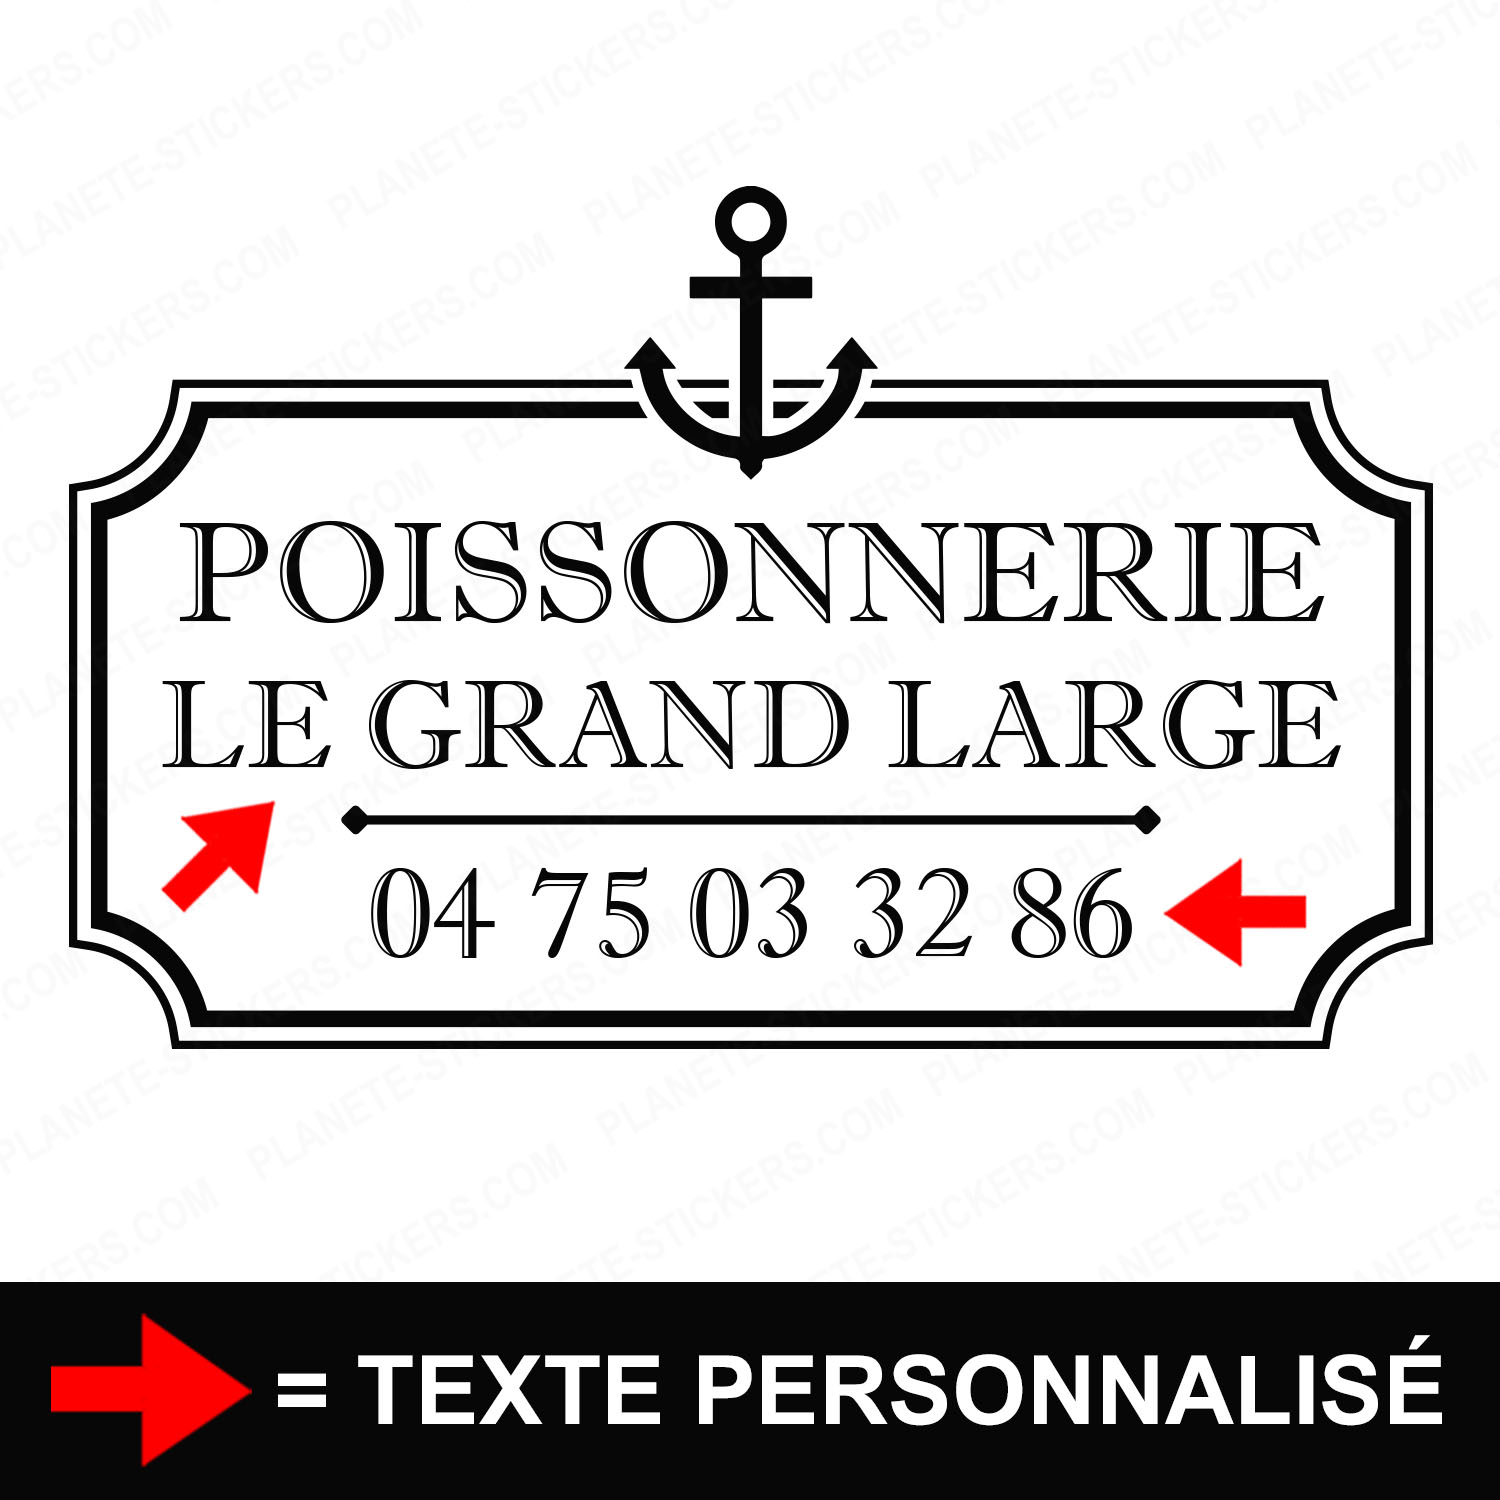 ref16poissonnerievitrine-stickers-poissonnerie-vitrine-sticker-personnalisé-autocollant-poissonnier-pro-vitre-poisson-professionnel-logo-ancre-2